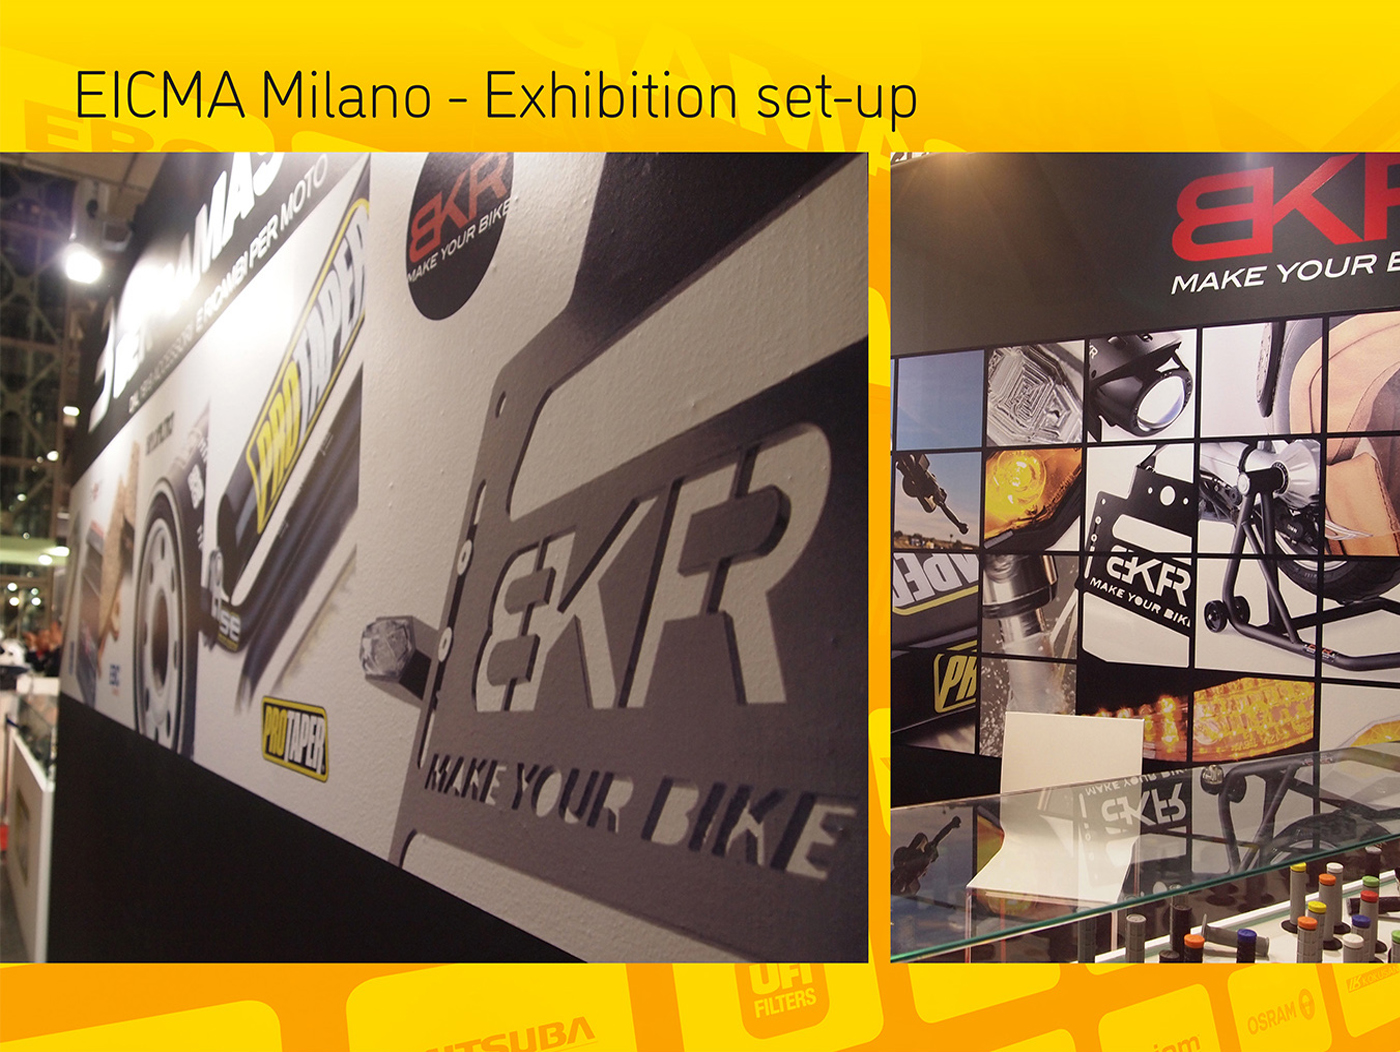 Exhibition set-up Eicma milano BKR - Bergamaschi